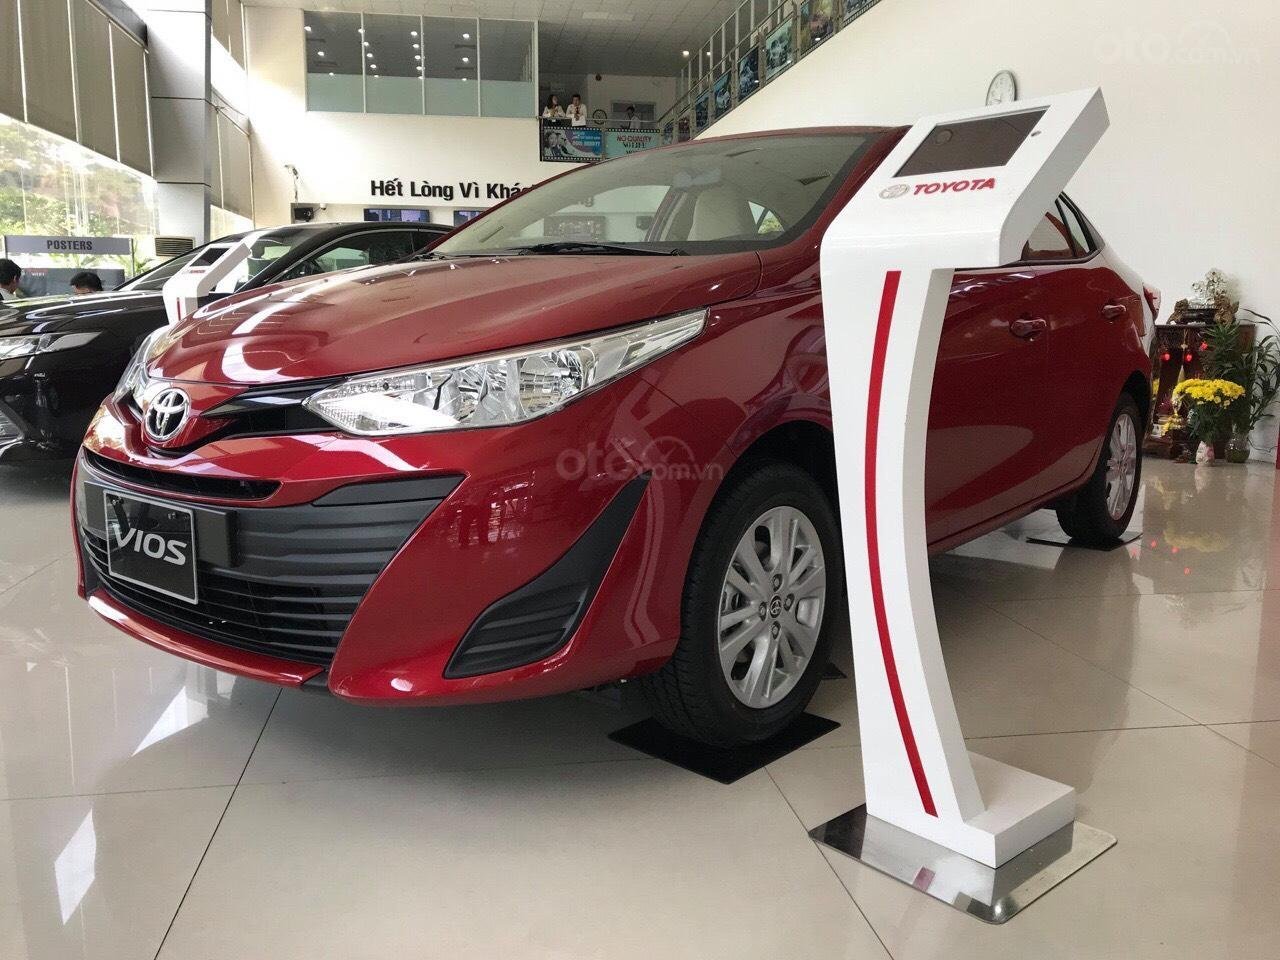 Toyota Vios dù doanh số cao vẫn nhận ưu đãi đến 100 triệu đồng